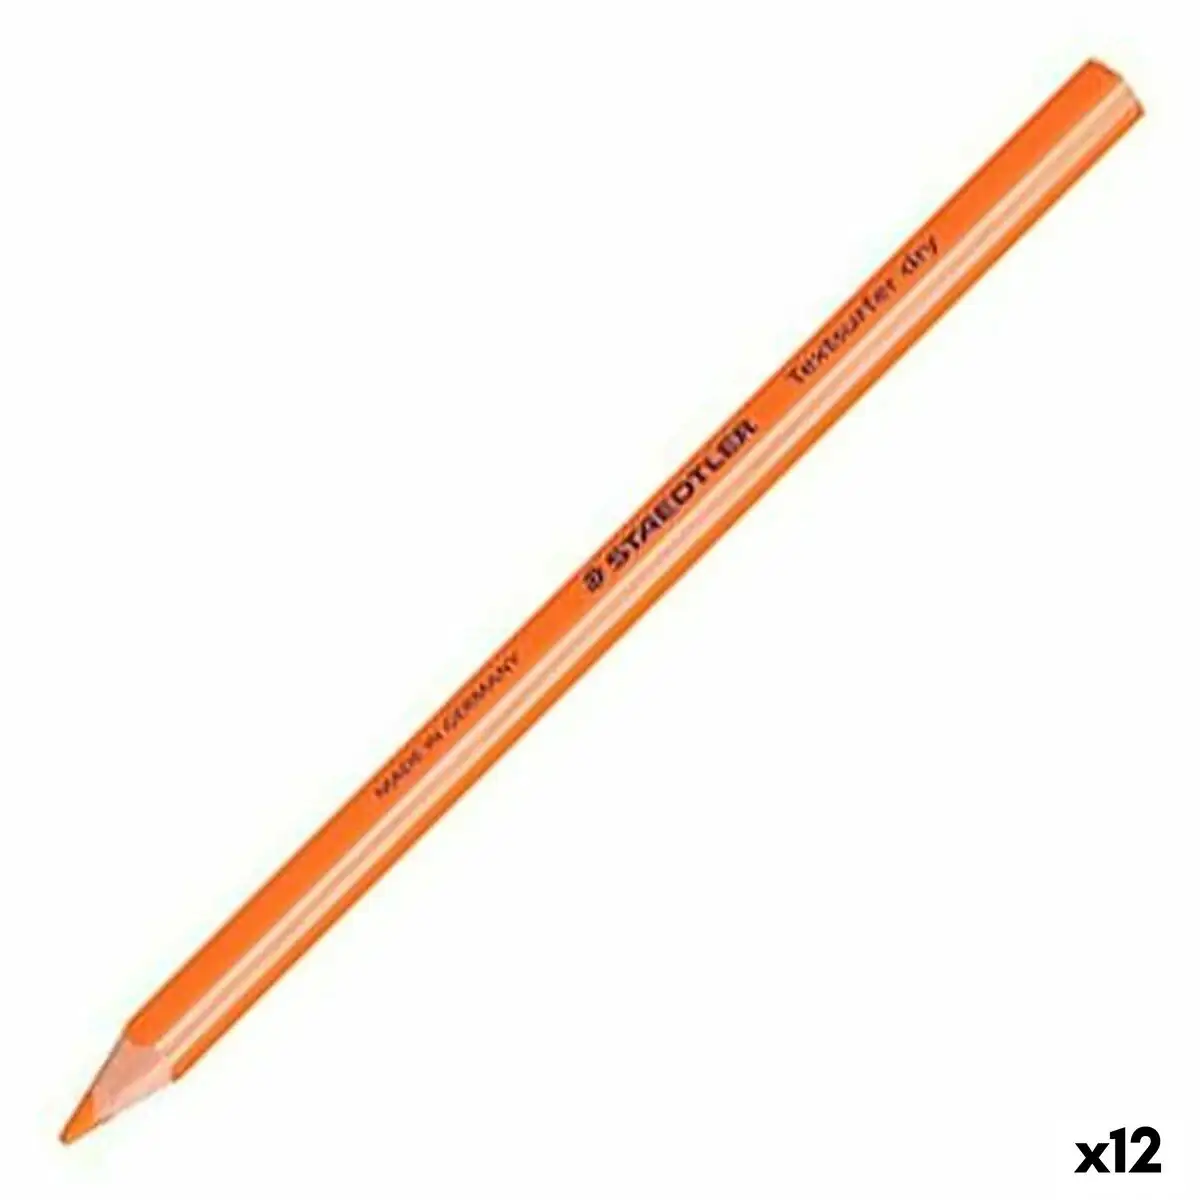 Marqueur fluorescent staedtler crayon orange 12 unites _8664. Bienvenue sur DIAYTAR SENEGAL - Où Choisir Rime avec Qualité. Explorez notre gamme diversifiée et découvrez des articles conçus pour répondre à vos attentes élevées.